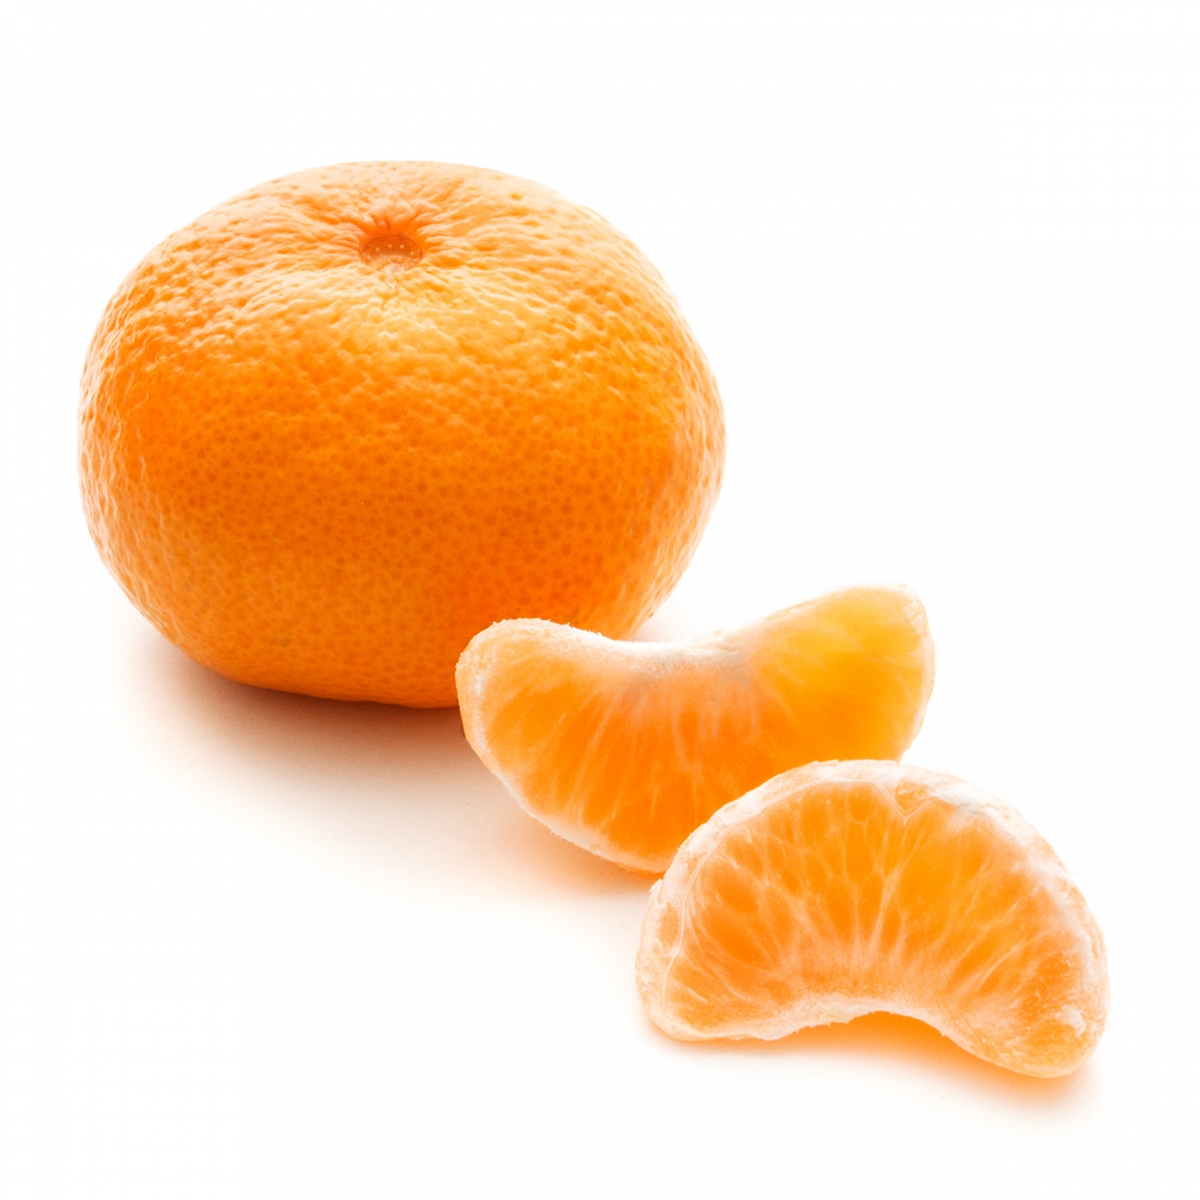 Imagen en la que se ve una mandarina y dos gajos delante de ella